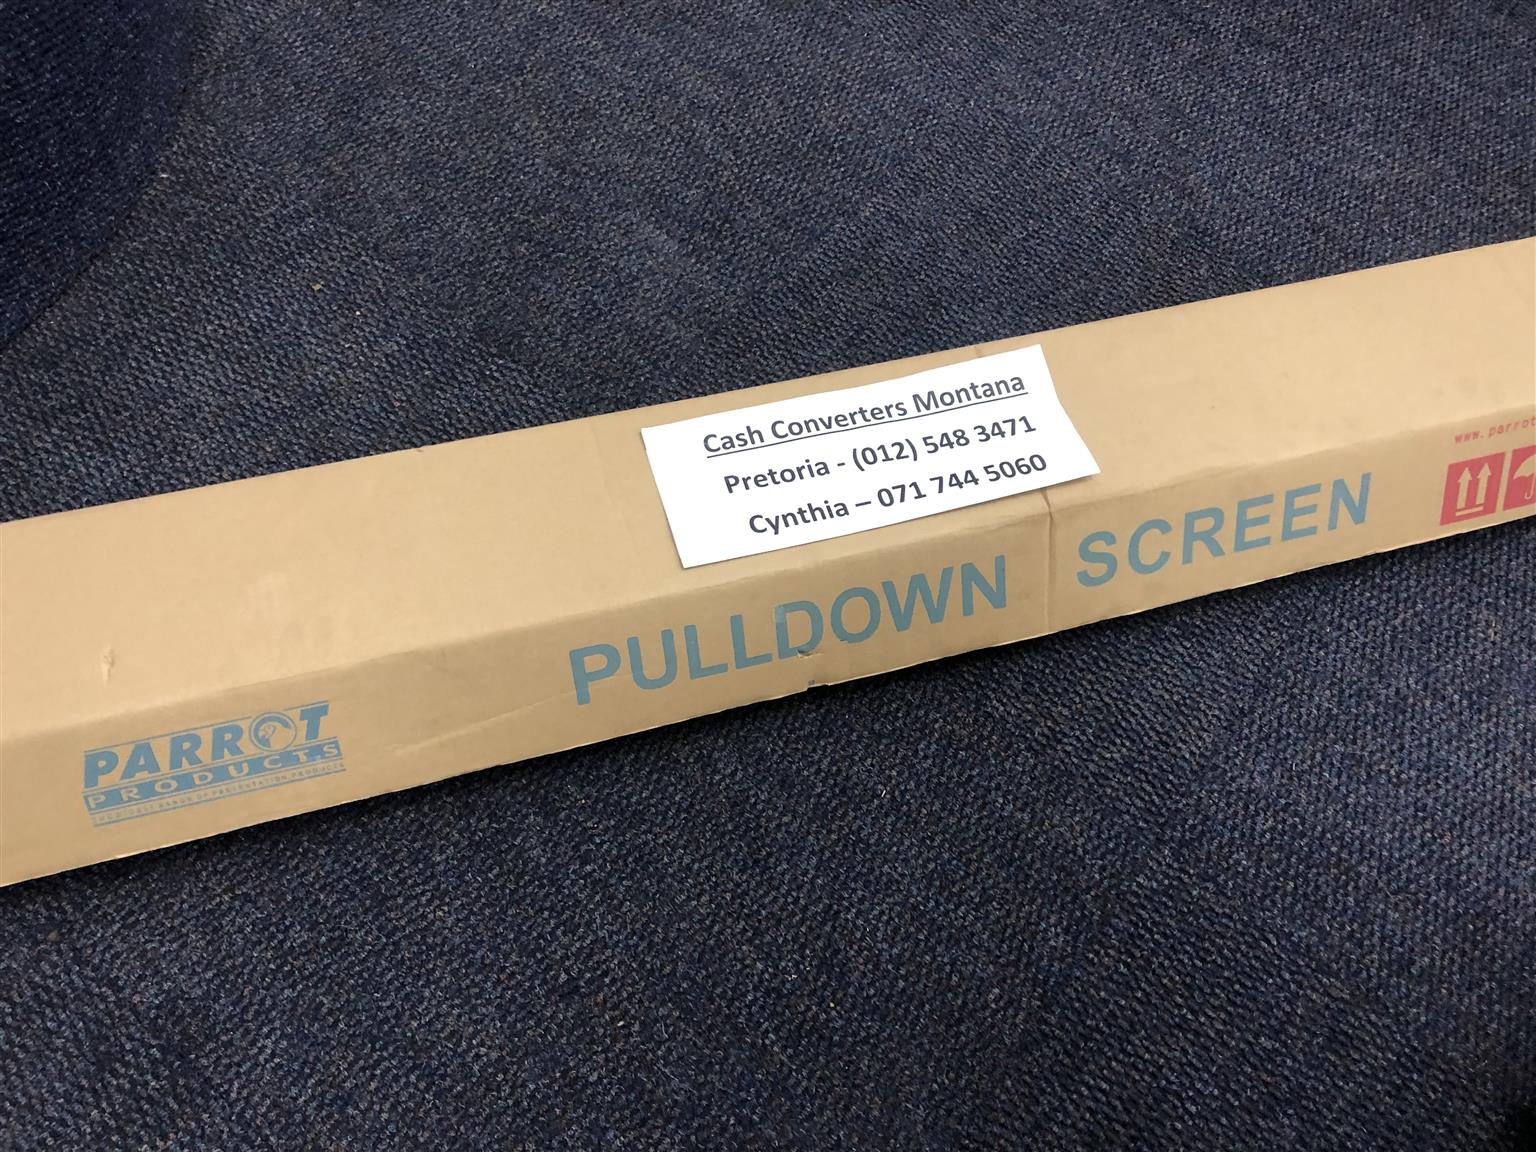 PVC Pulldown Screen Parrot SC0273 